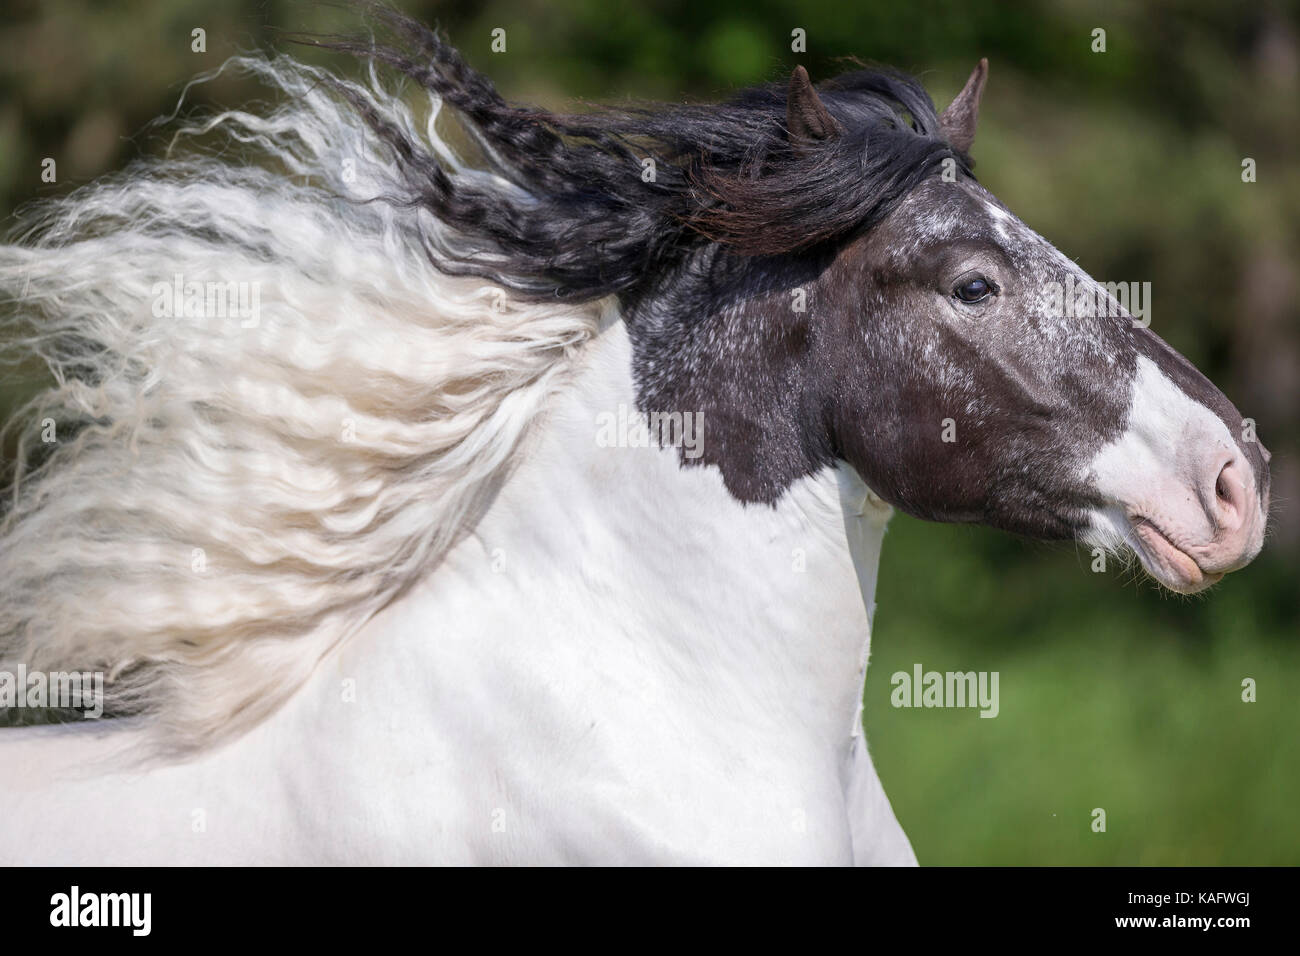 Noriker Horse. Portrait of piebald gelding with mane flowing. Austria Stock Photo